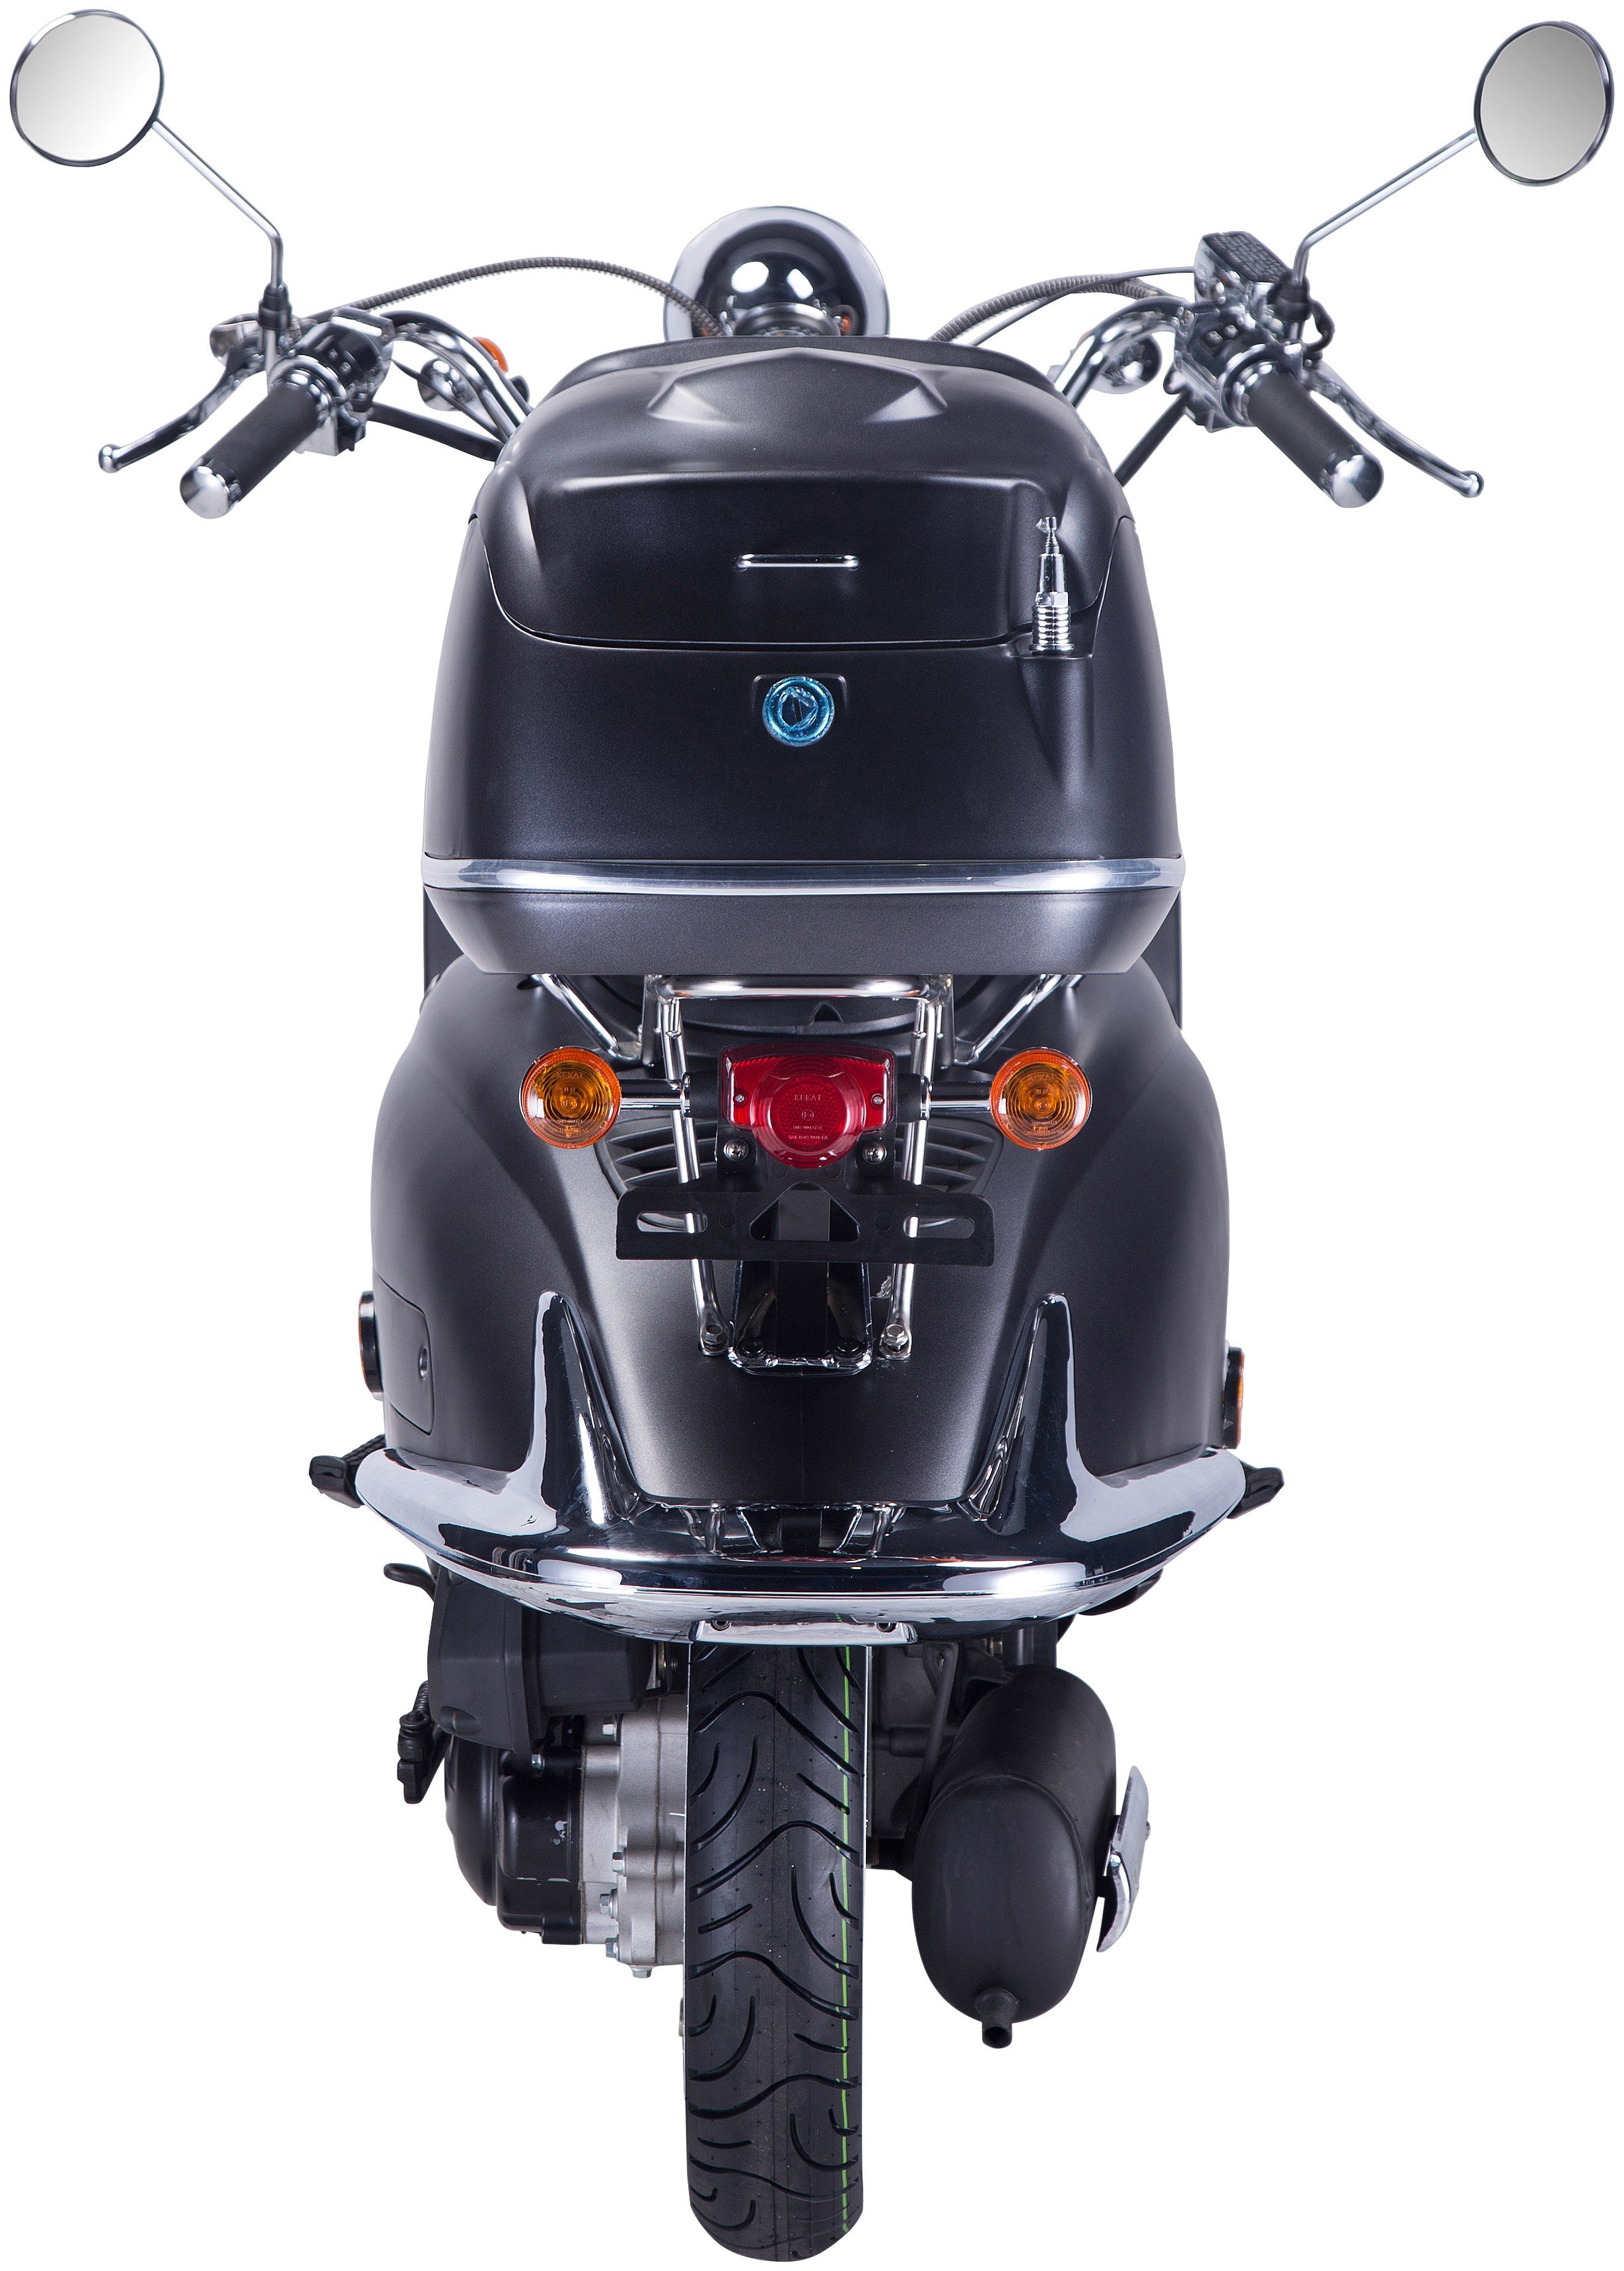 GT UNION Motorroller Strada, Topcase ccm, 5, 125 85 schwarz/silberfarben Euro (Set), mit km/h